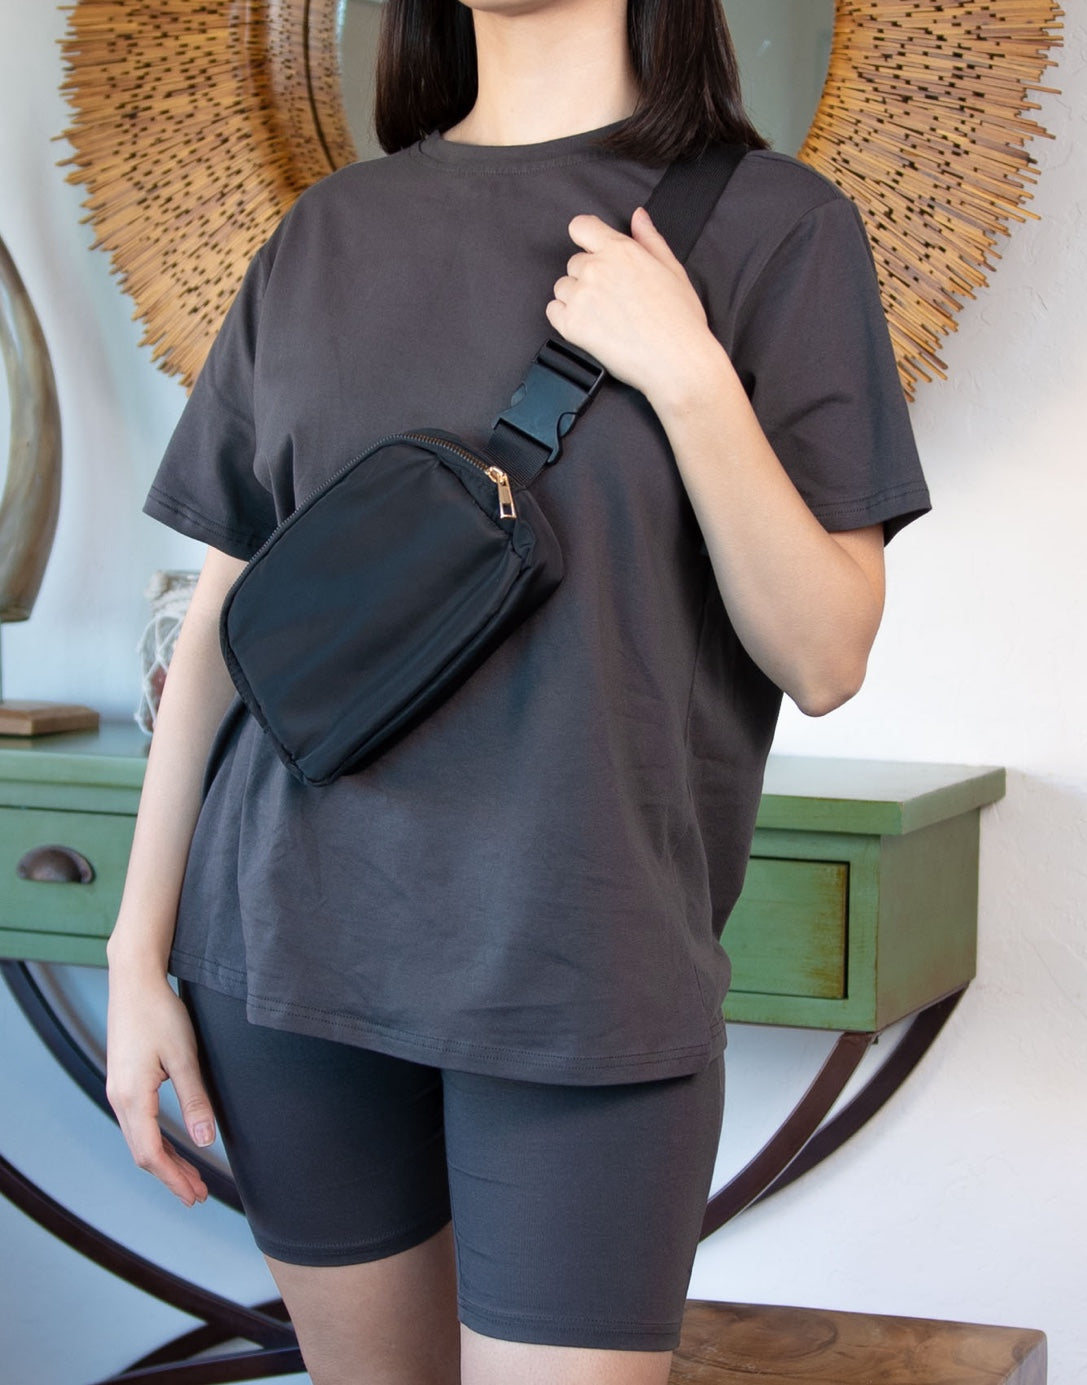 Lululemon Everywhere Bag for Less: 6 Stylish & Affordable Fanny